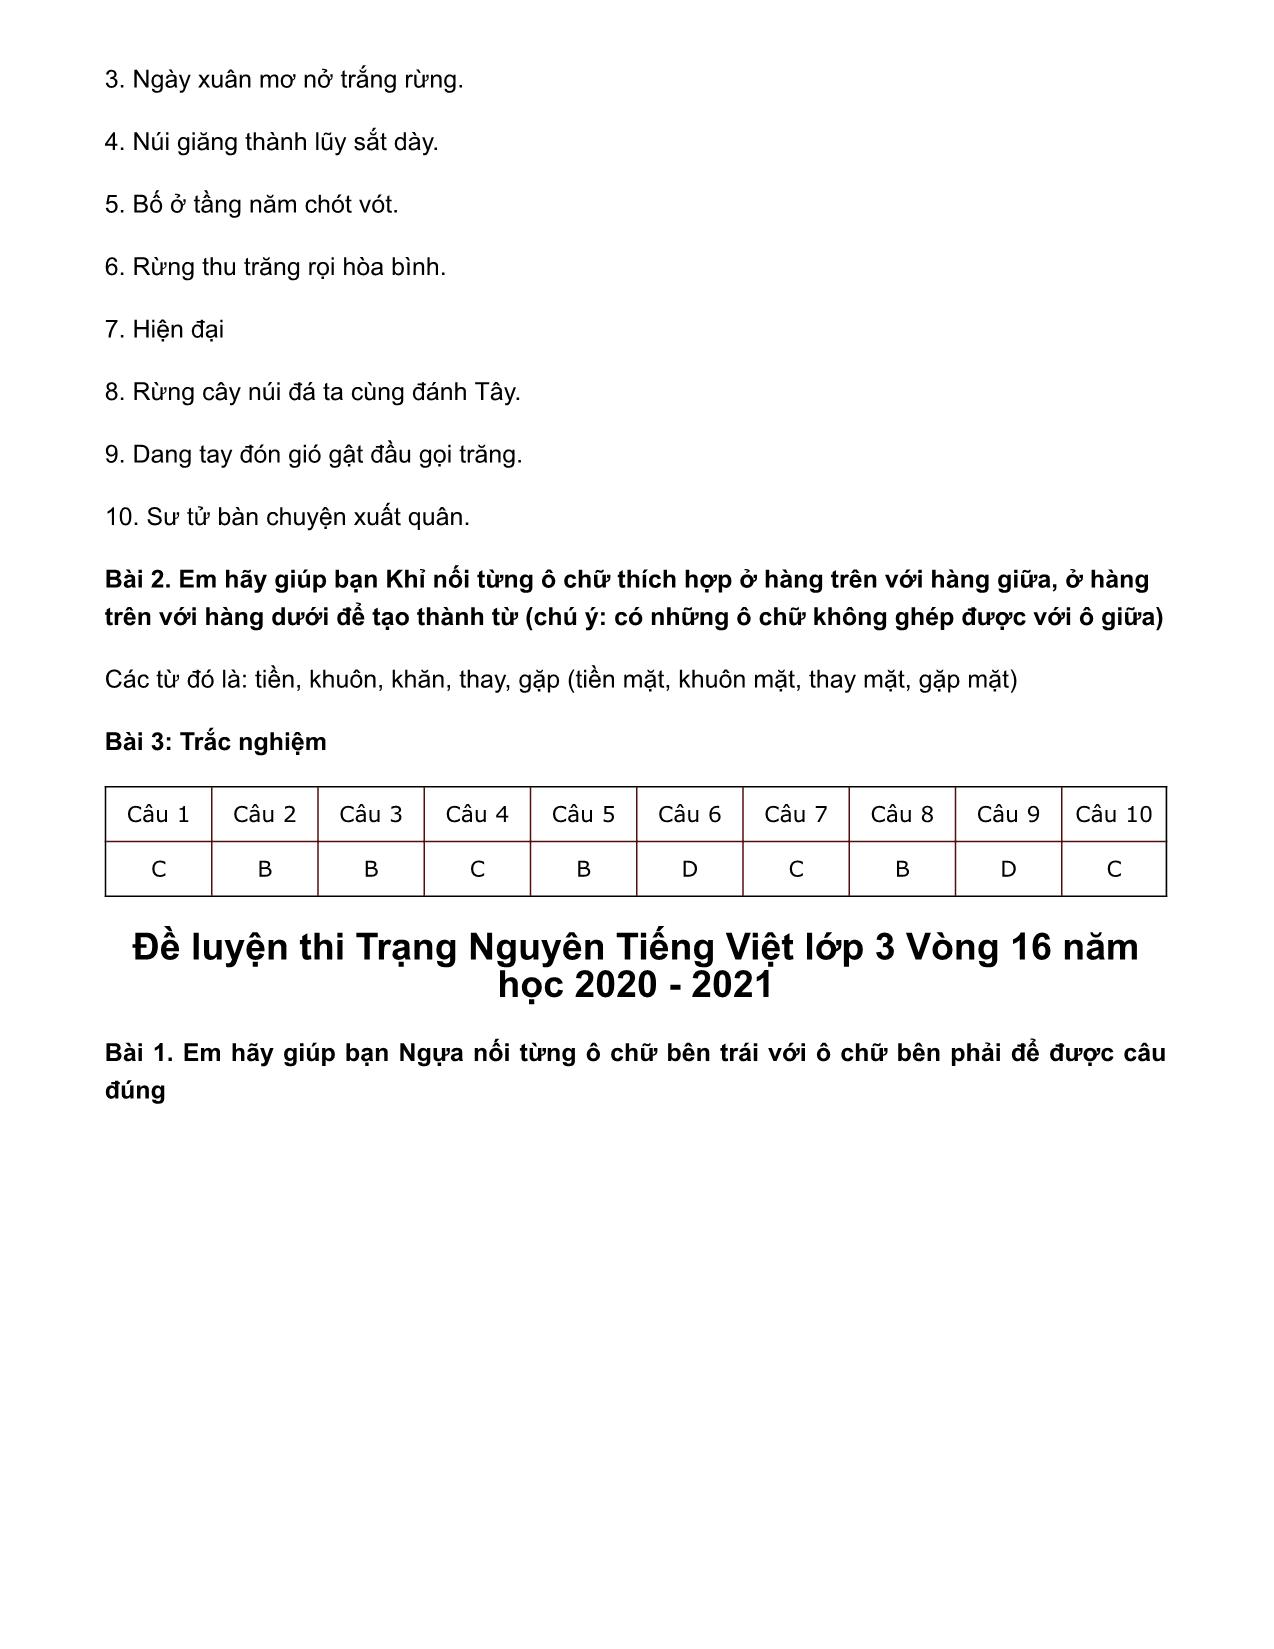 Đề luyện thi Trạng Nguyên Tiếng Việt Lớp 3 - Vòng 17 - Năm học 2020-2021 trang 4